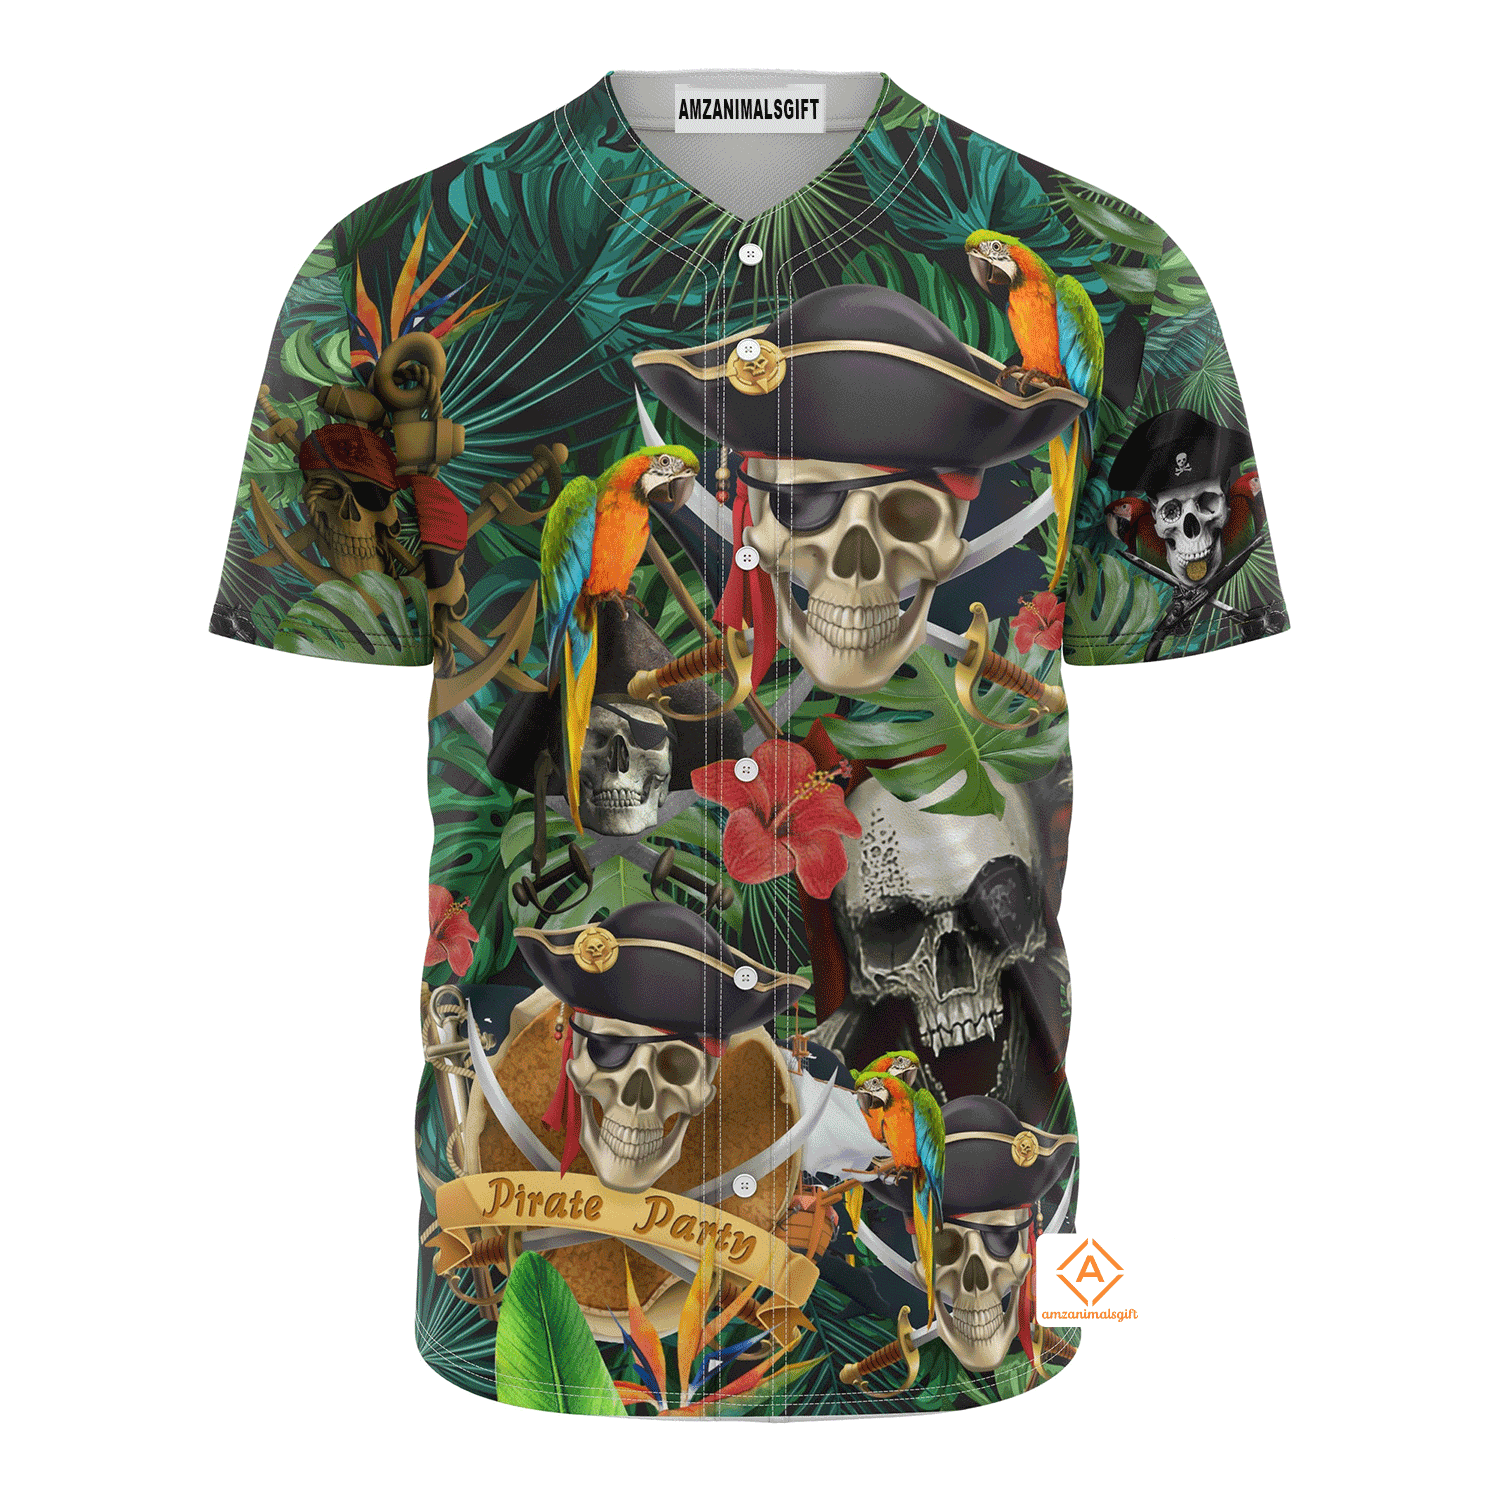 Pirates Skull Baseball Jersey Shirt - Skull Pirates Make Legends Baseball Jersey Shirt For Pirates Lover